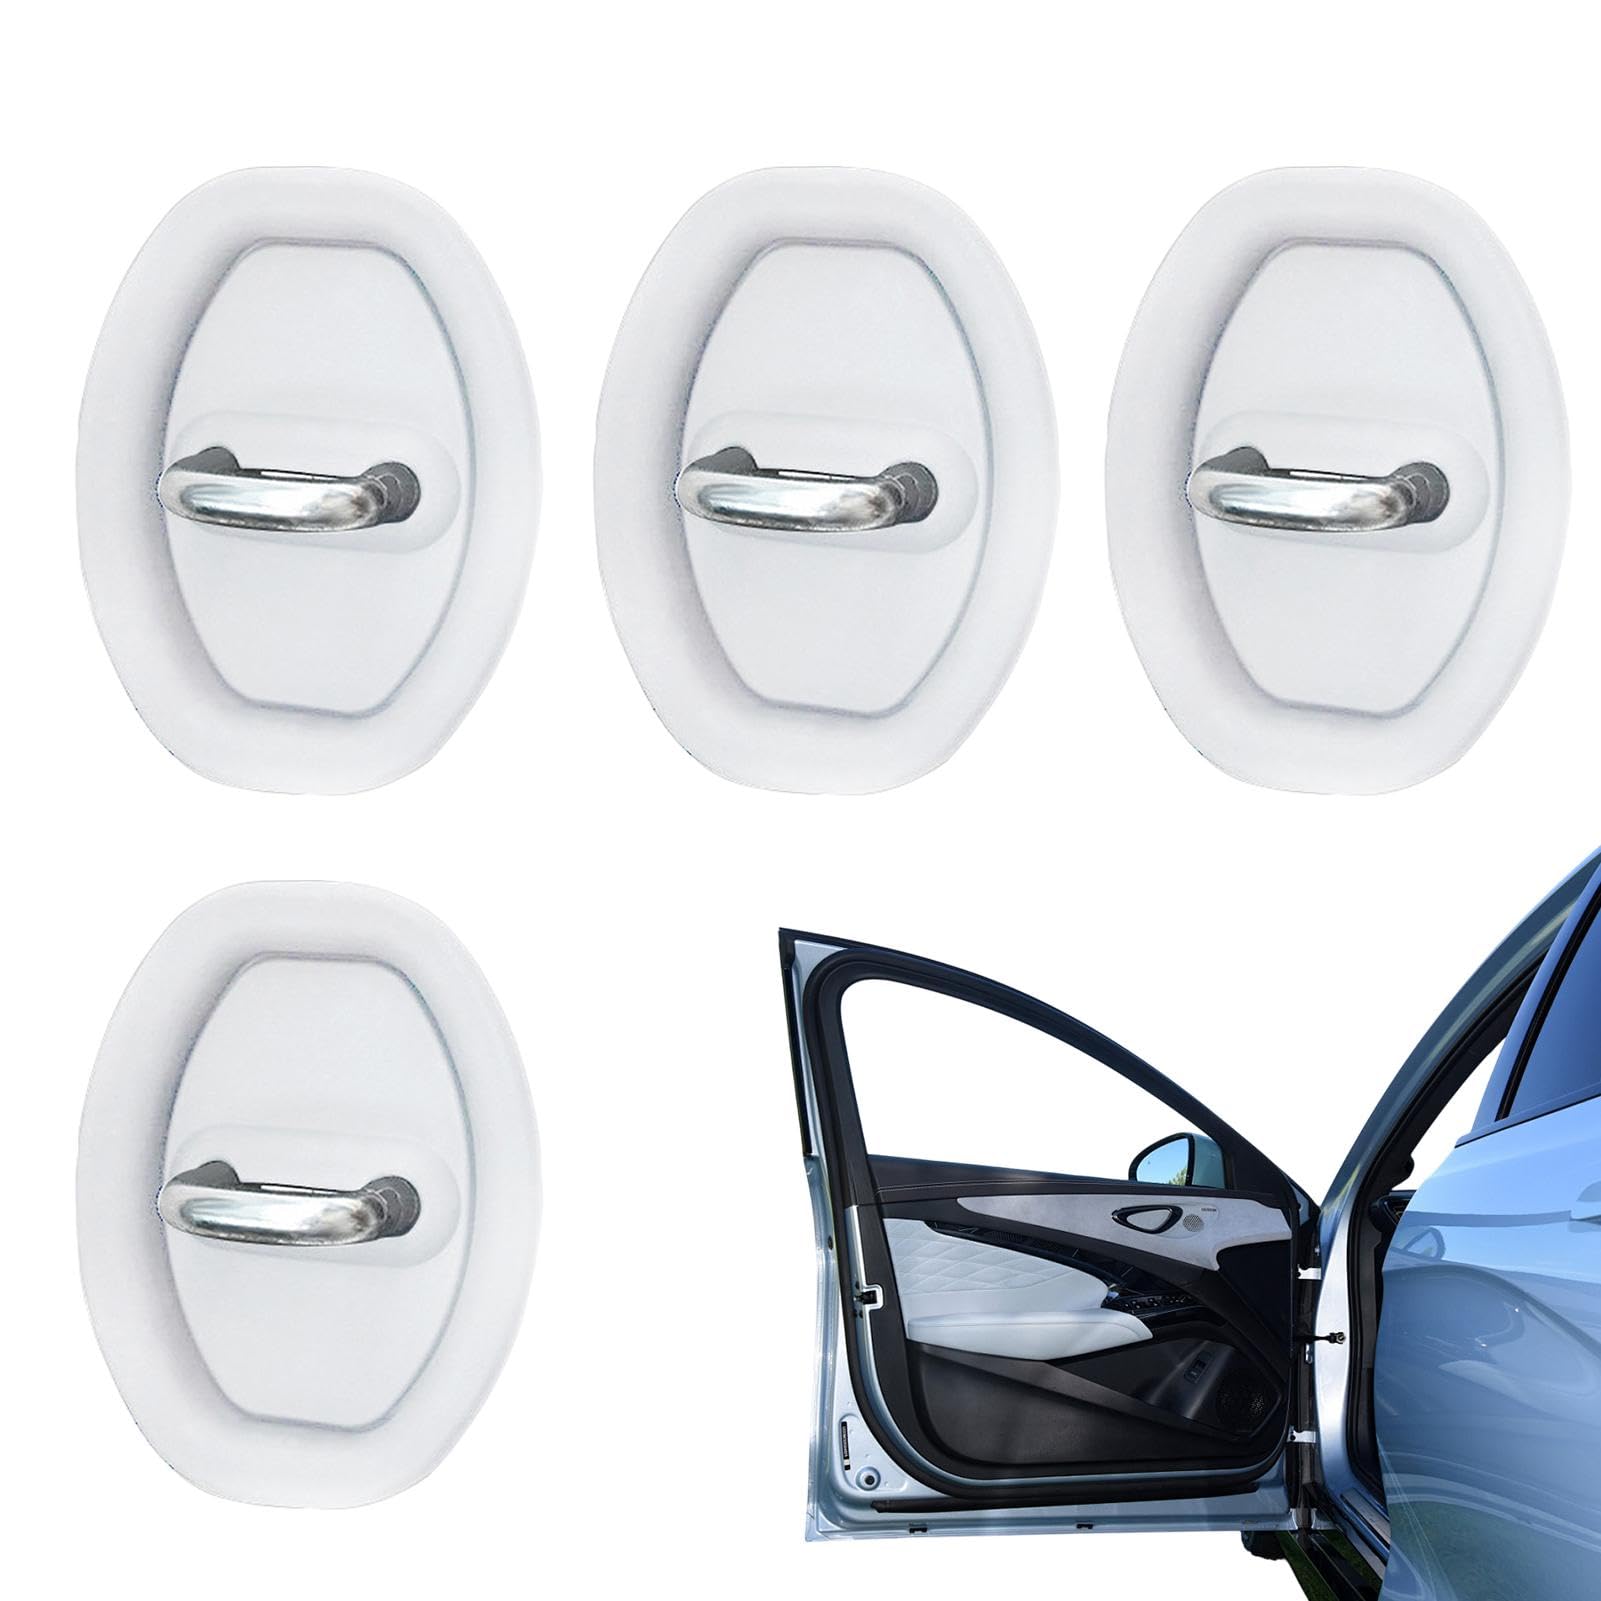 4 Silikon-Türriegel-Schutzhüllen für Autotürschlösser | Auto-Silikon-Türverriegelungs-Schutzabdeckung, geräuschlose Stoßdämpfung, Fahrzeugtüren, Schlösser, Schutzstopper-Set, Autozubehör von Virtcooy